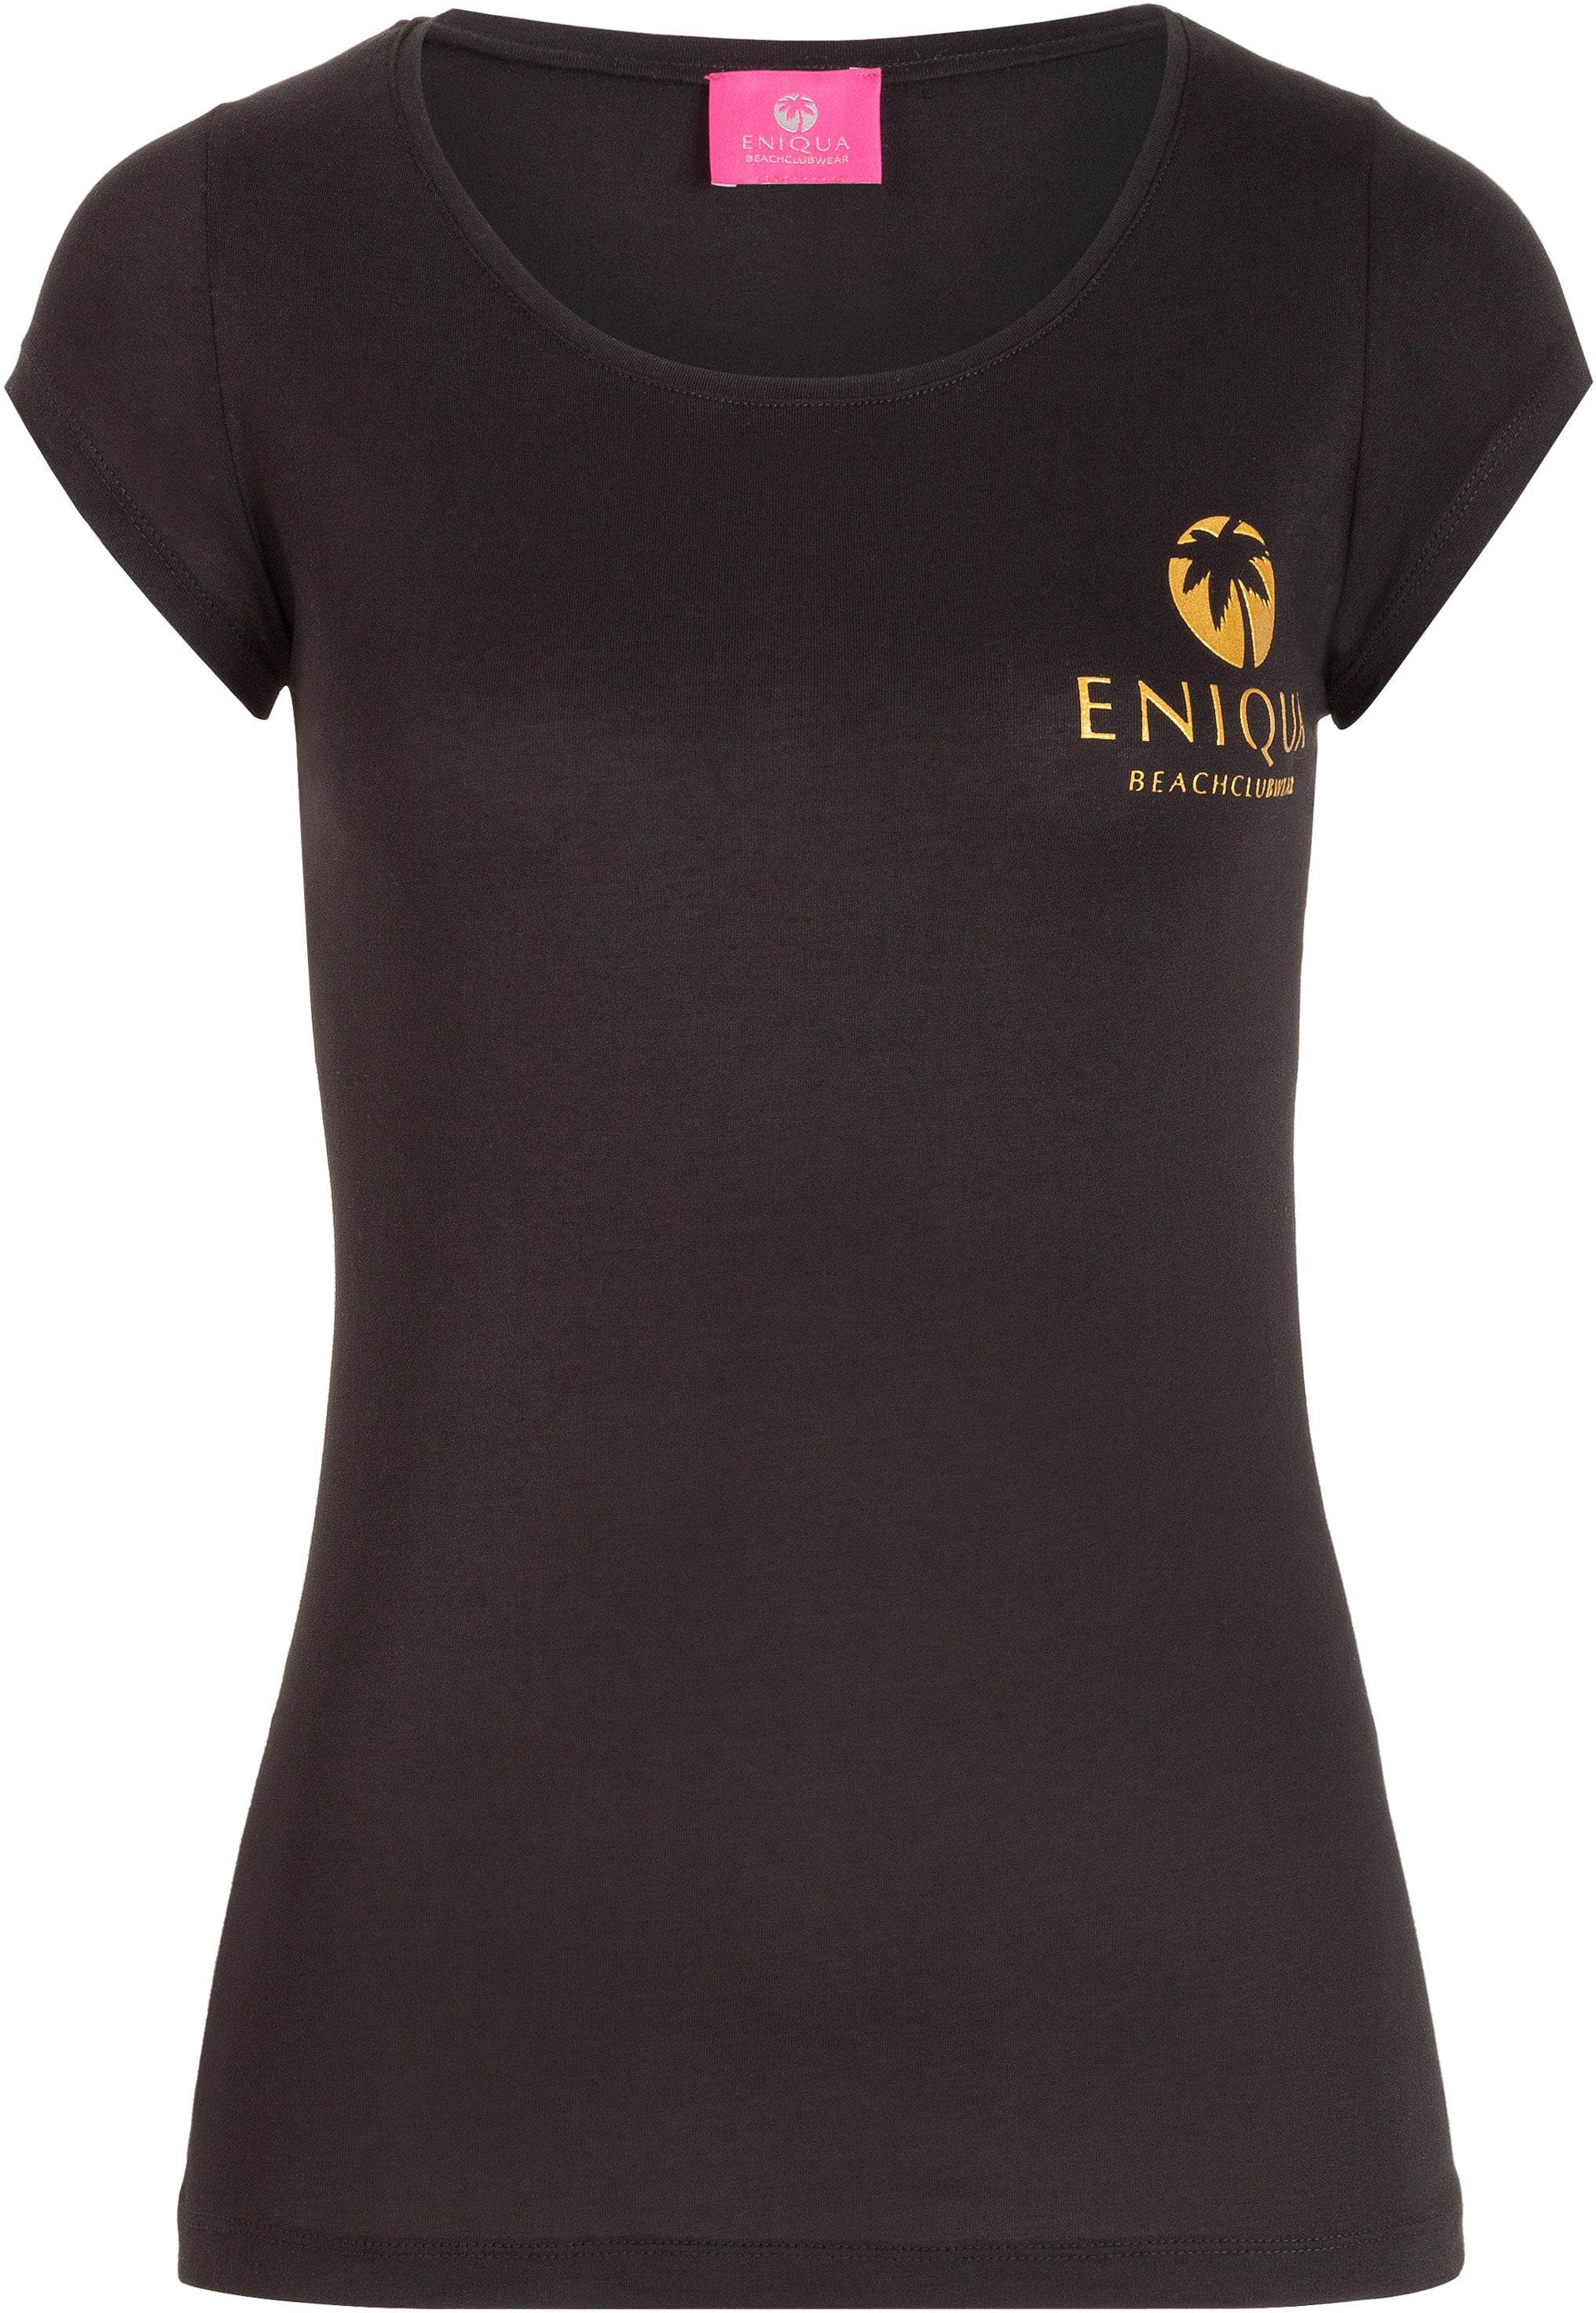 Eniqua - Logo Tee Black W Woman T